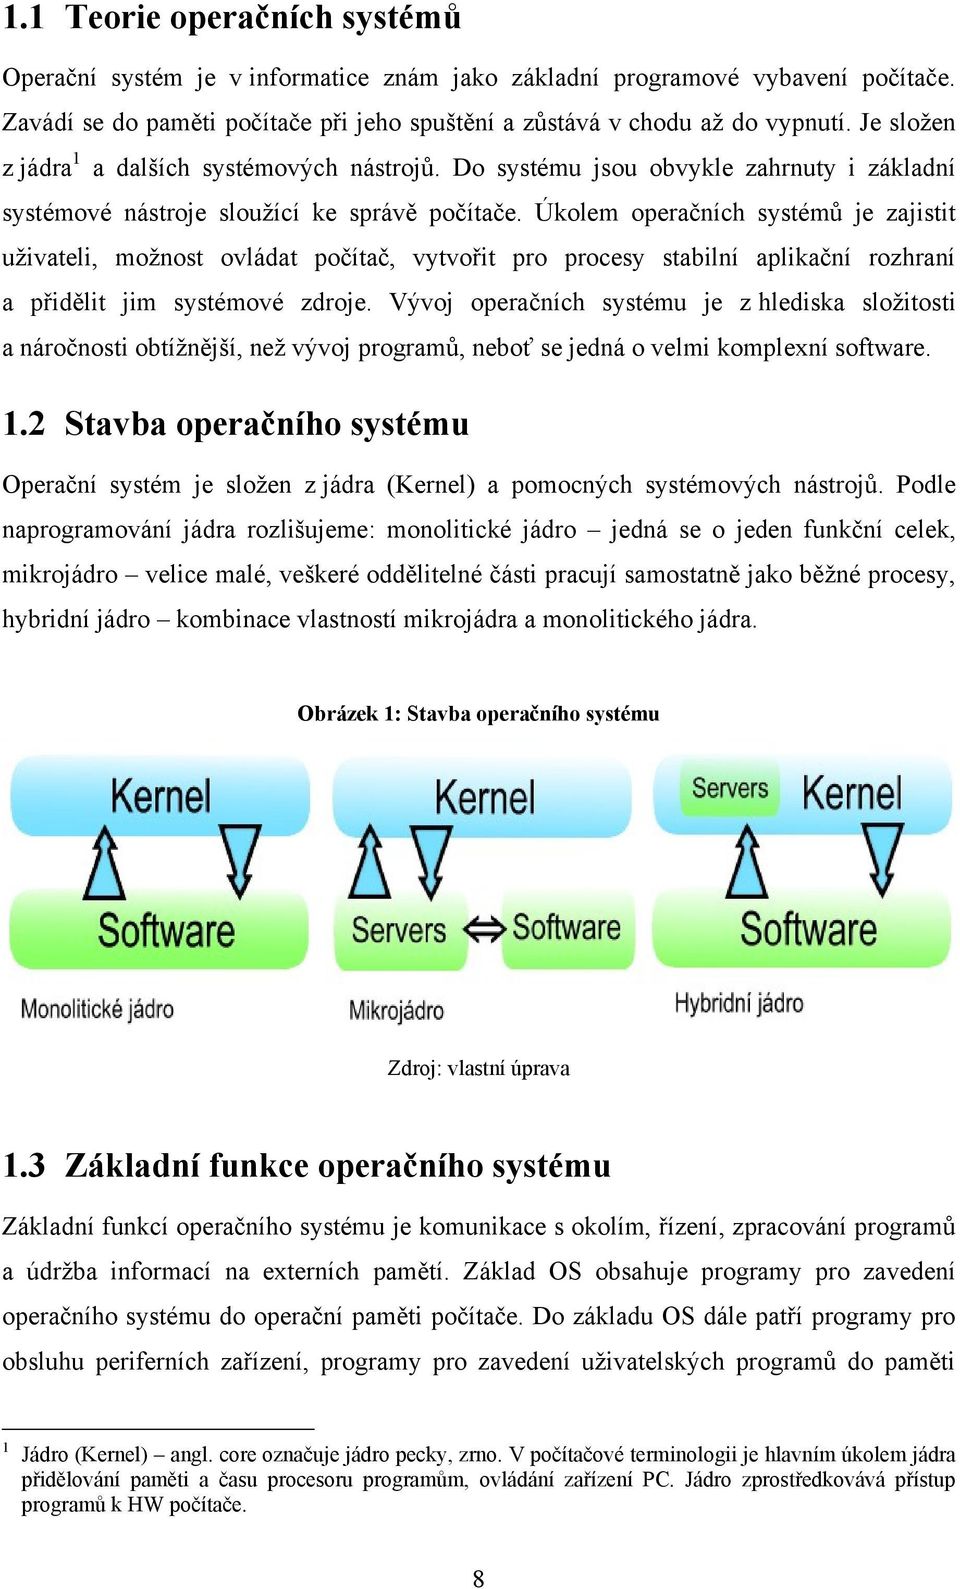 Úkolem operačních systémů je zajistit uţivateli, moţnost ovládat počítač, vytvořit pro procesy stabilní aplikační rozhraní a přidělit jim systémové zdroje.